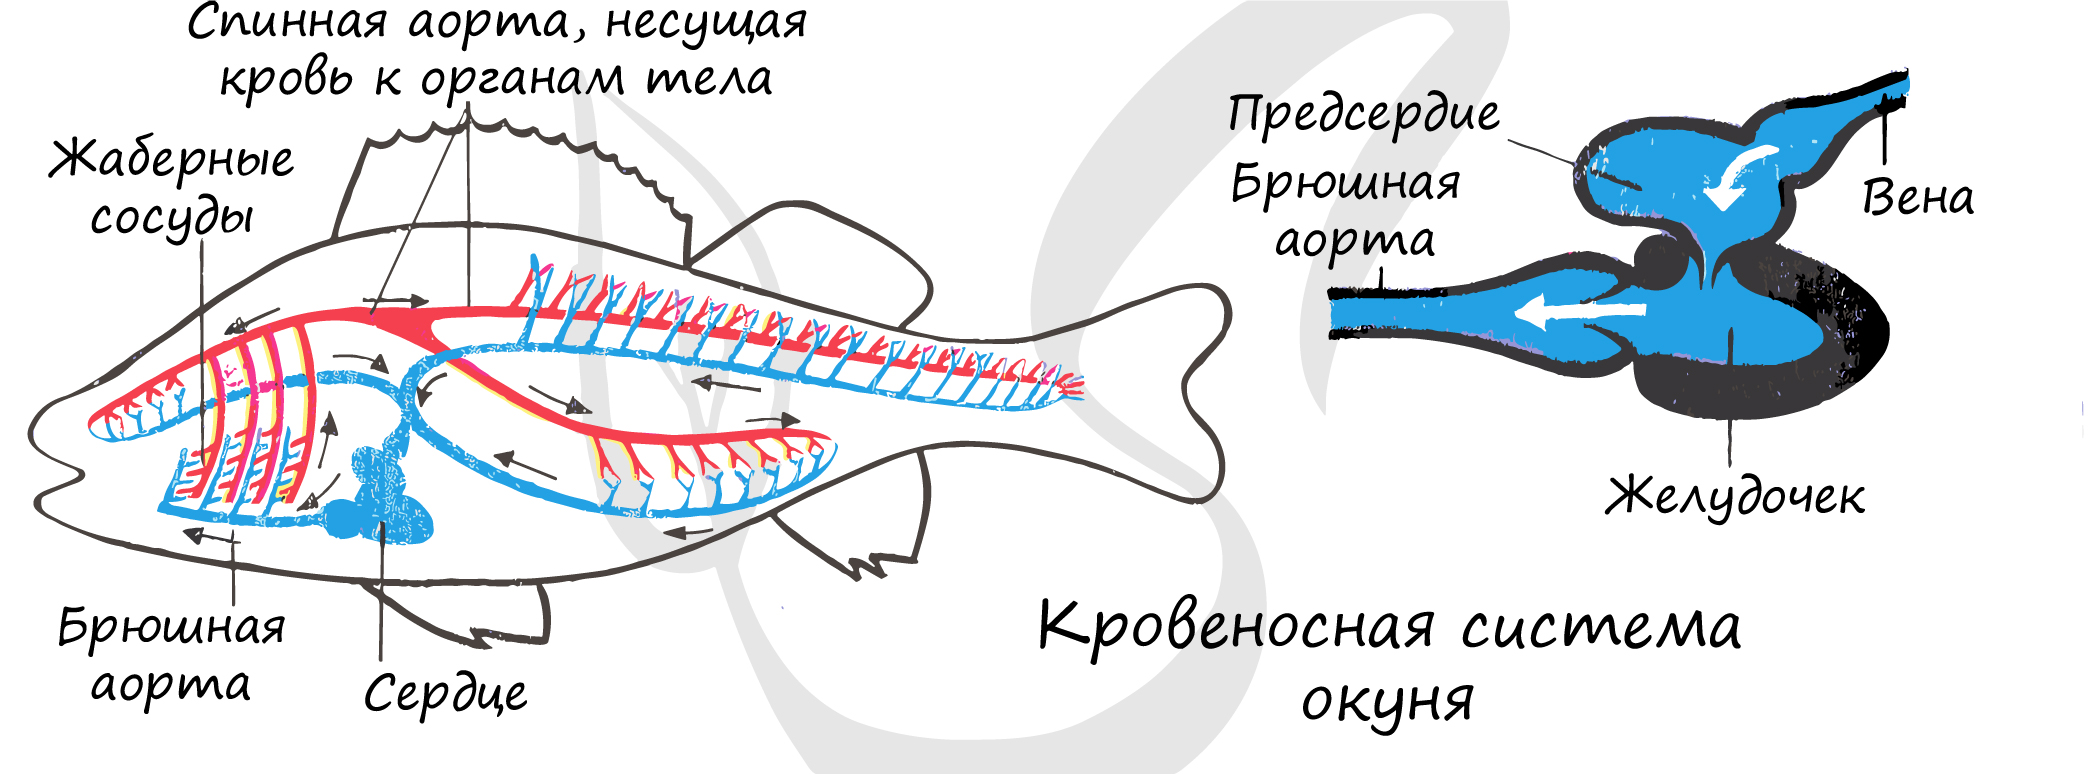 Сердце рыб состоит из камер. Схема строения кровеносной системы костной рыбы. Кровеносная система рыб схема 7 класс. Внутреннее строение речного окуня кровеносная система. Кровеносная система у рыб представлена кровообращения.